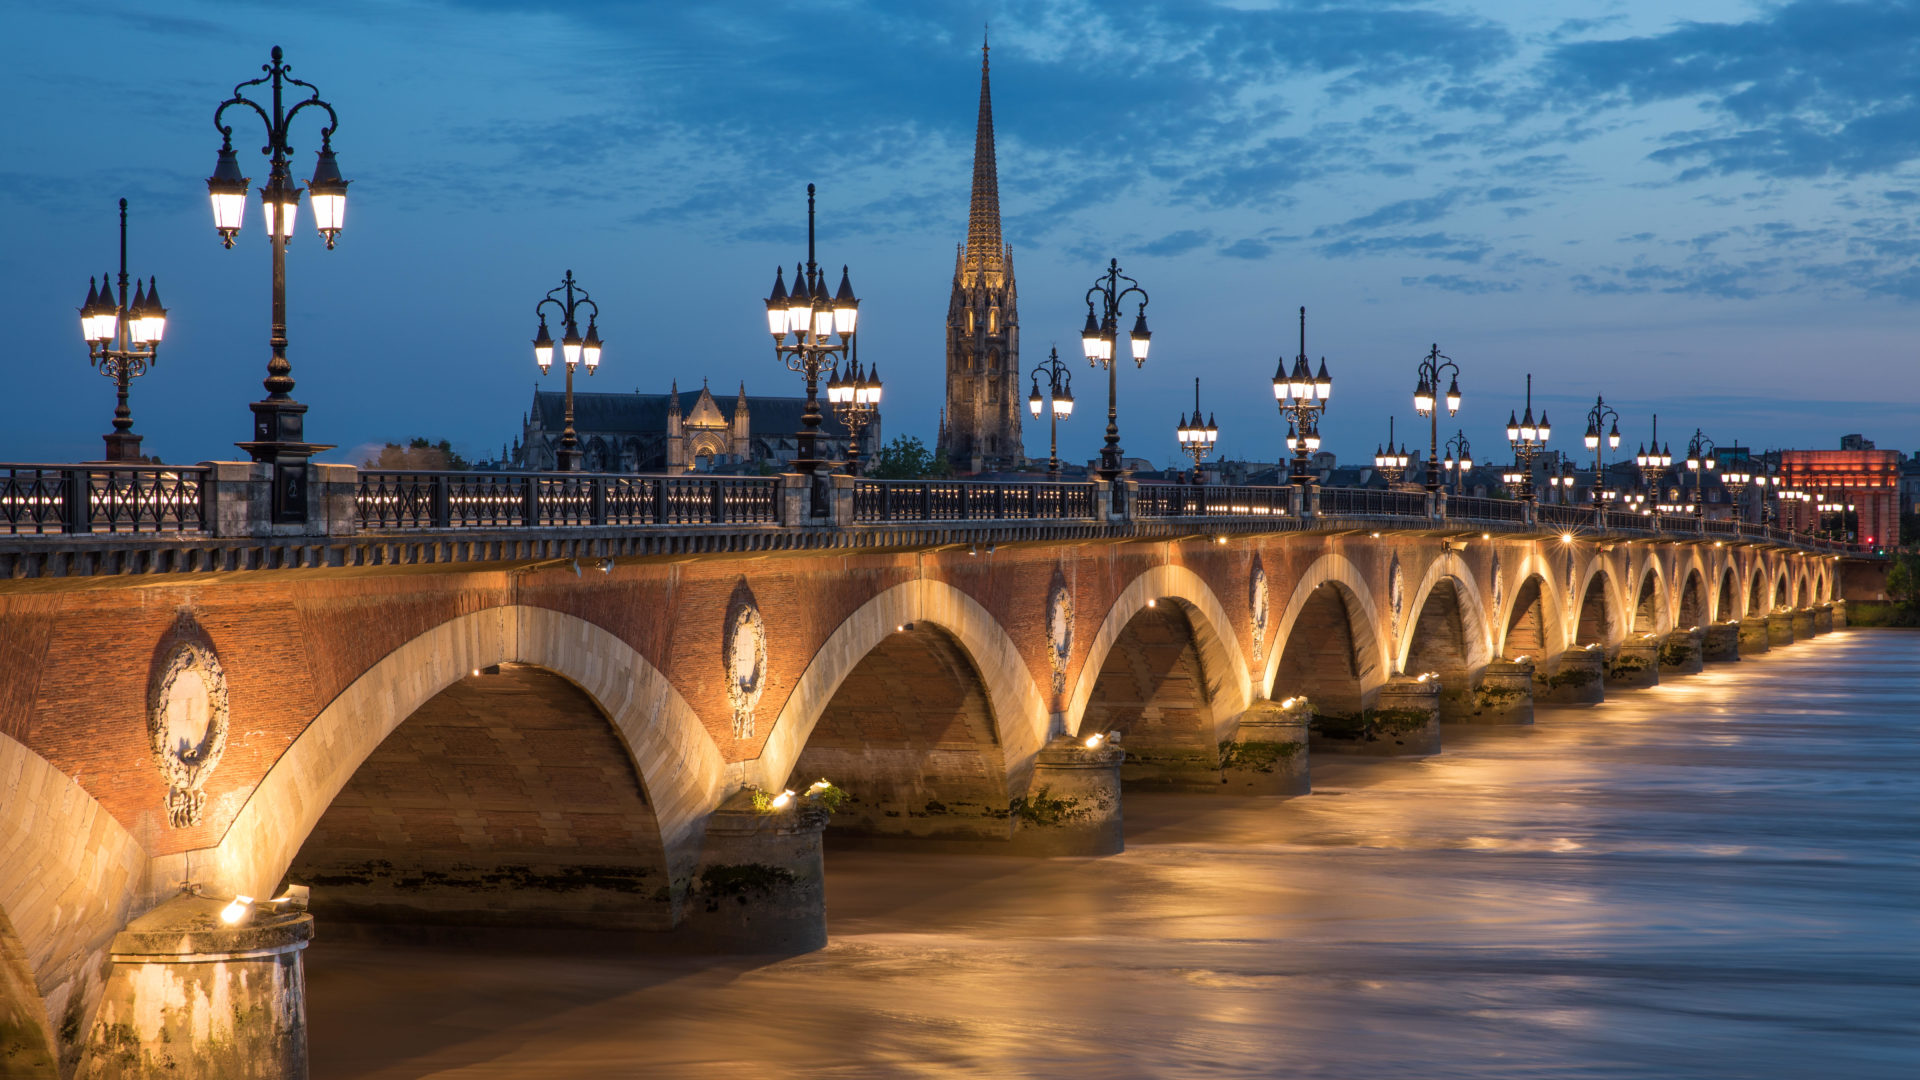 The Pont de Pierre spanning the River Garonne in Bordeaux, France in April 2017